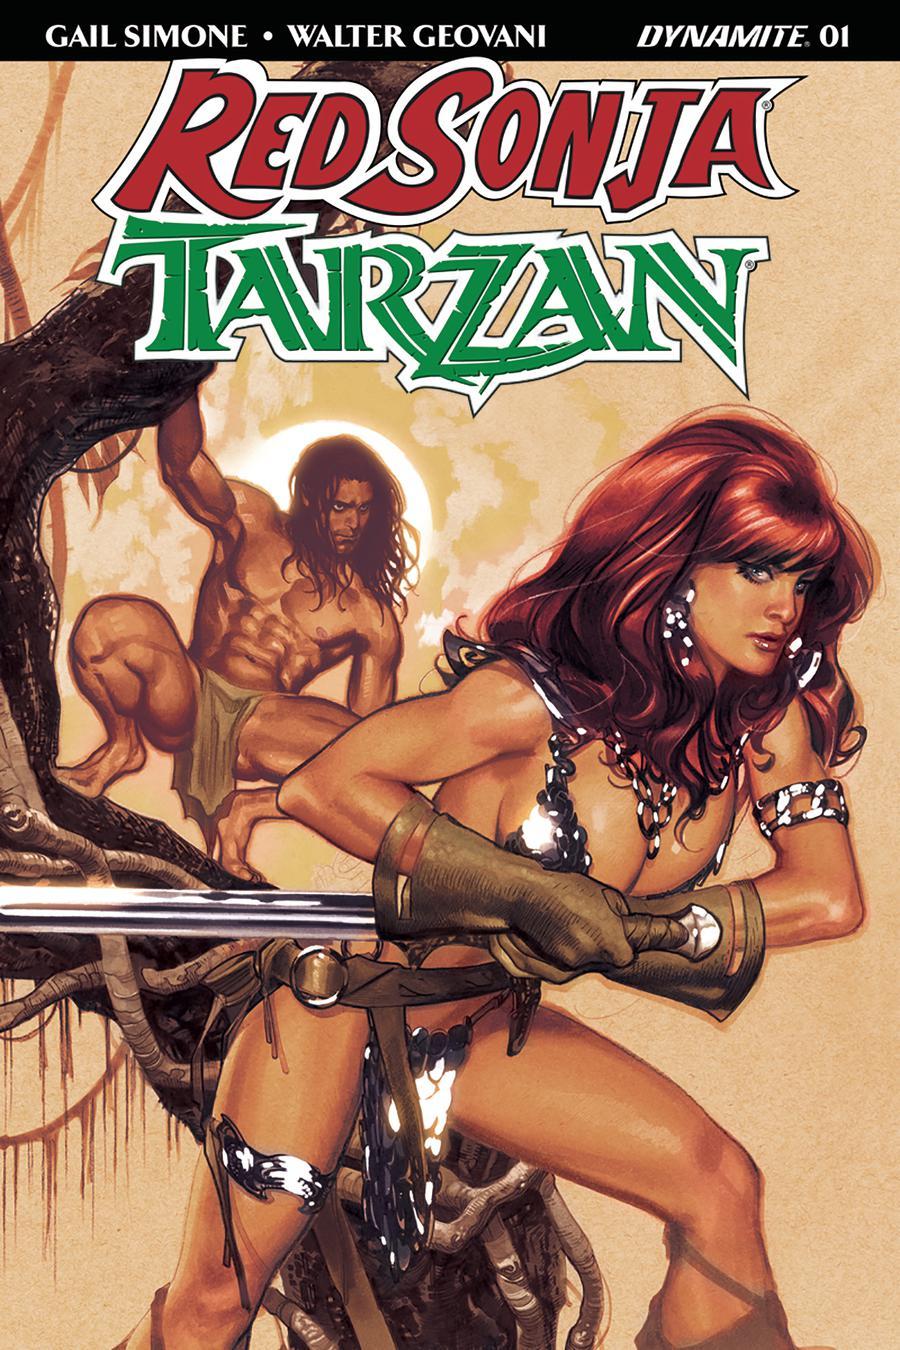 Red Sonja Tarzan Vol. 1 #1